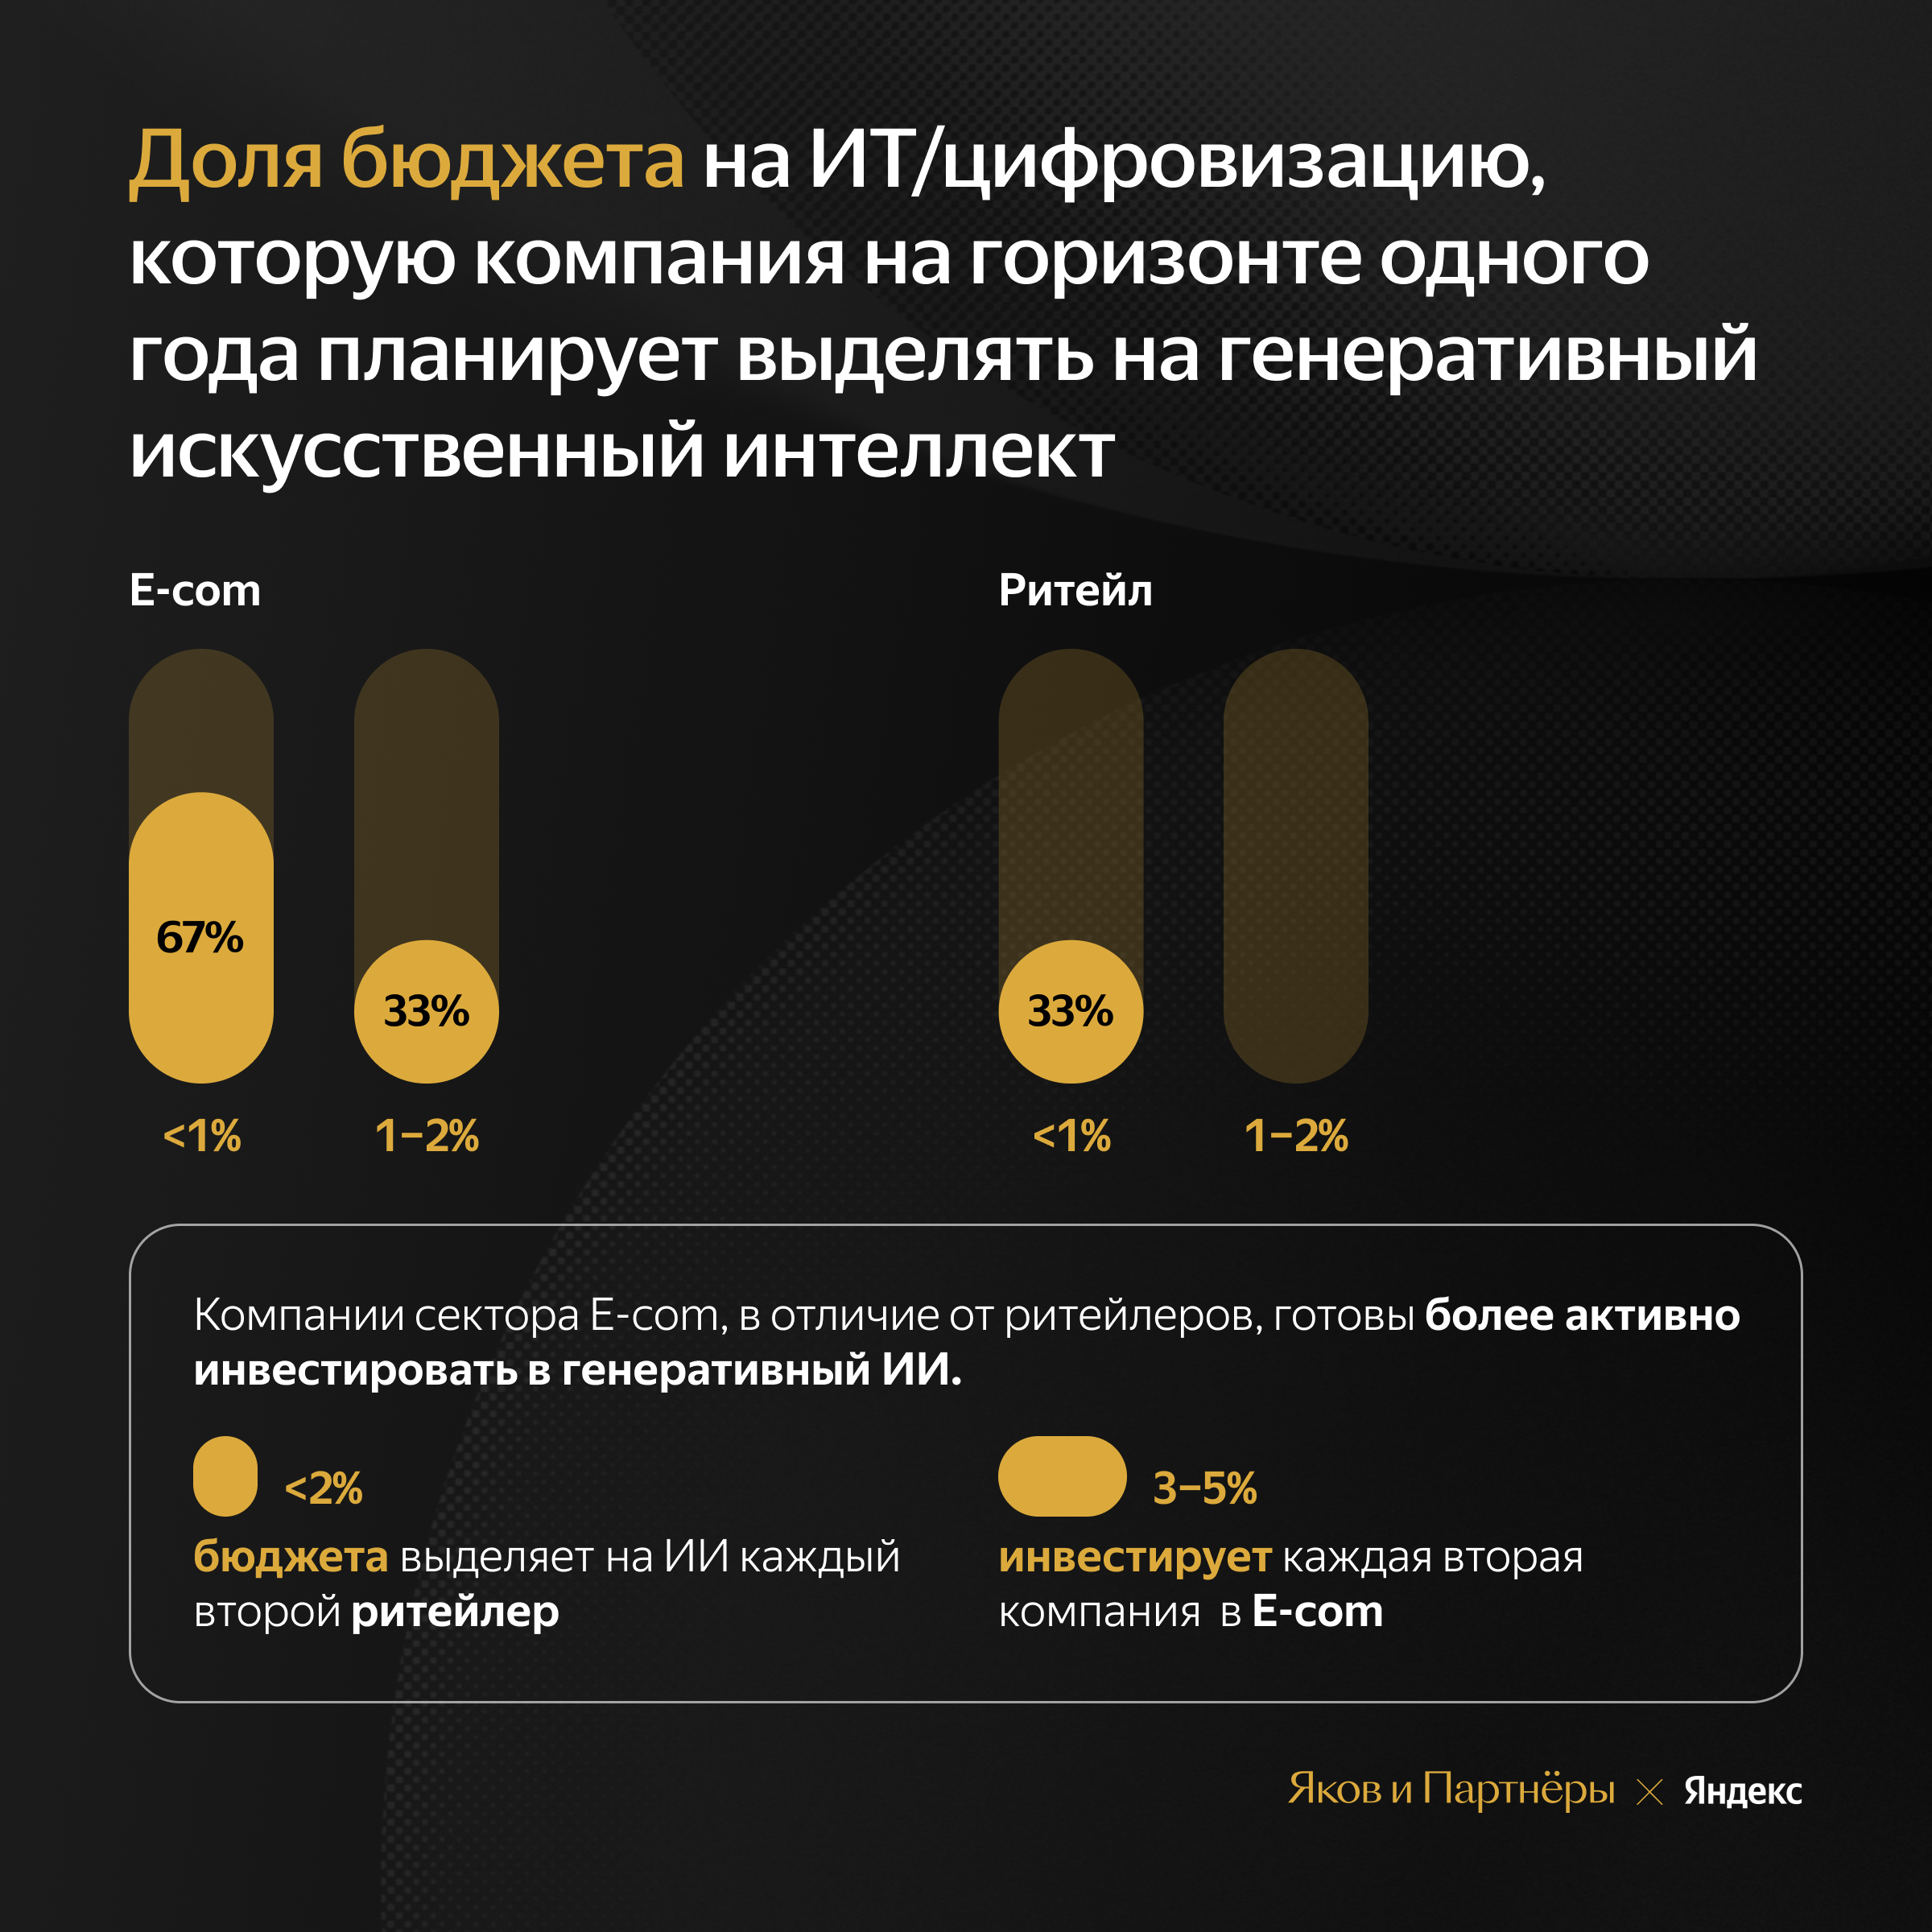 67% российских еcom-компаний используют в работе нейросети